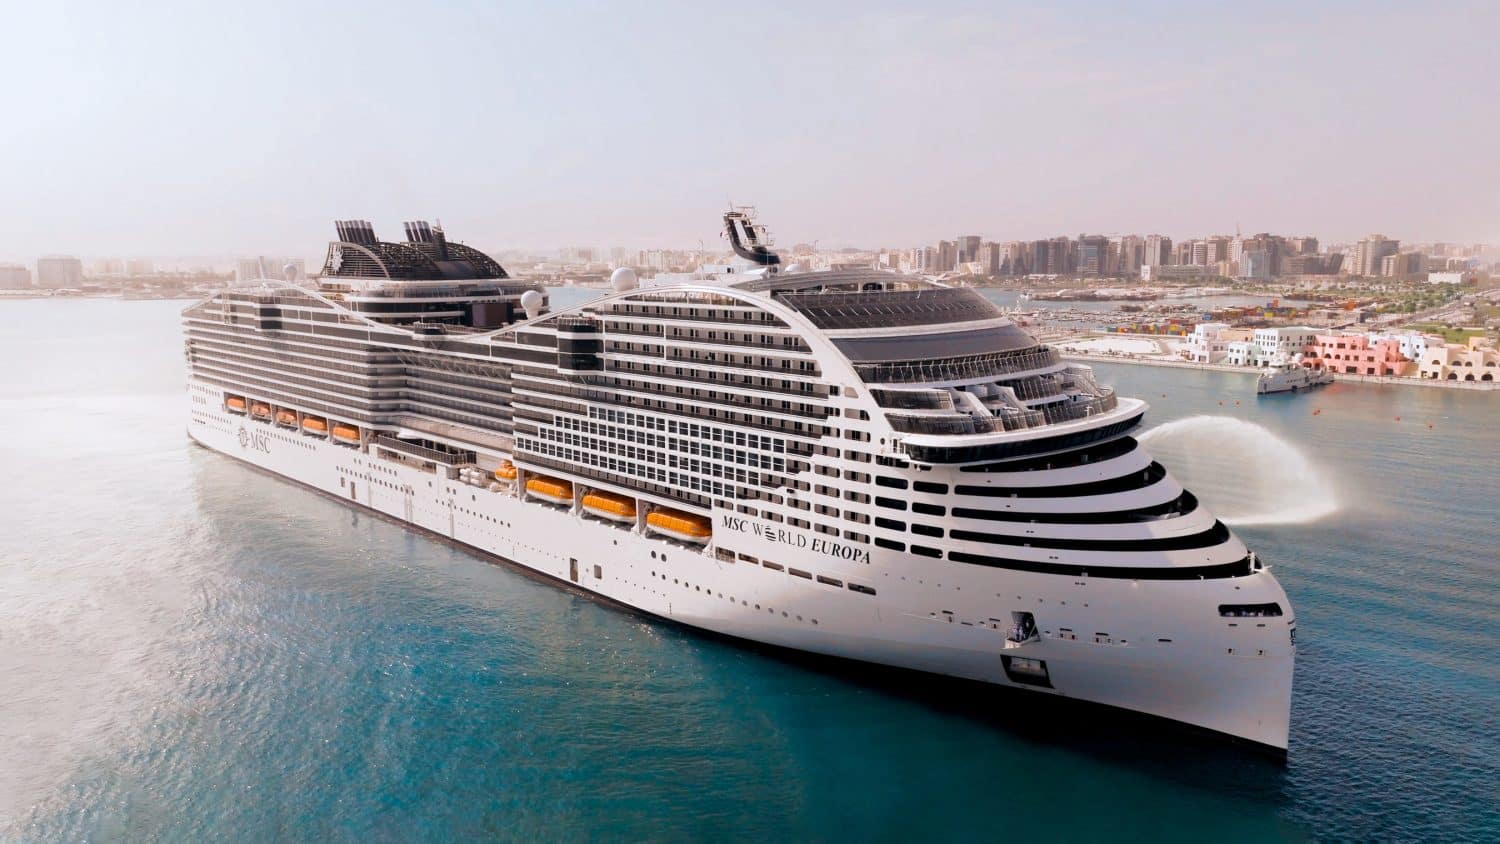 msc world's largest cruise ship